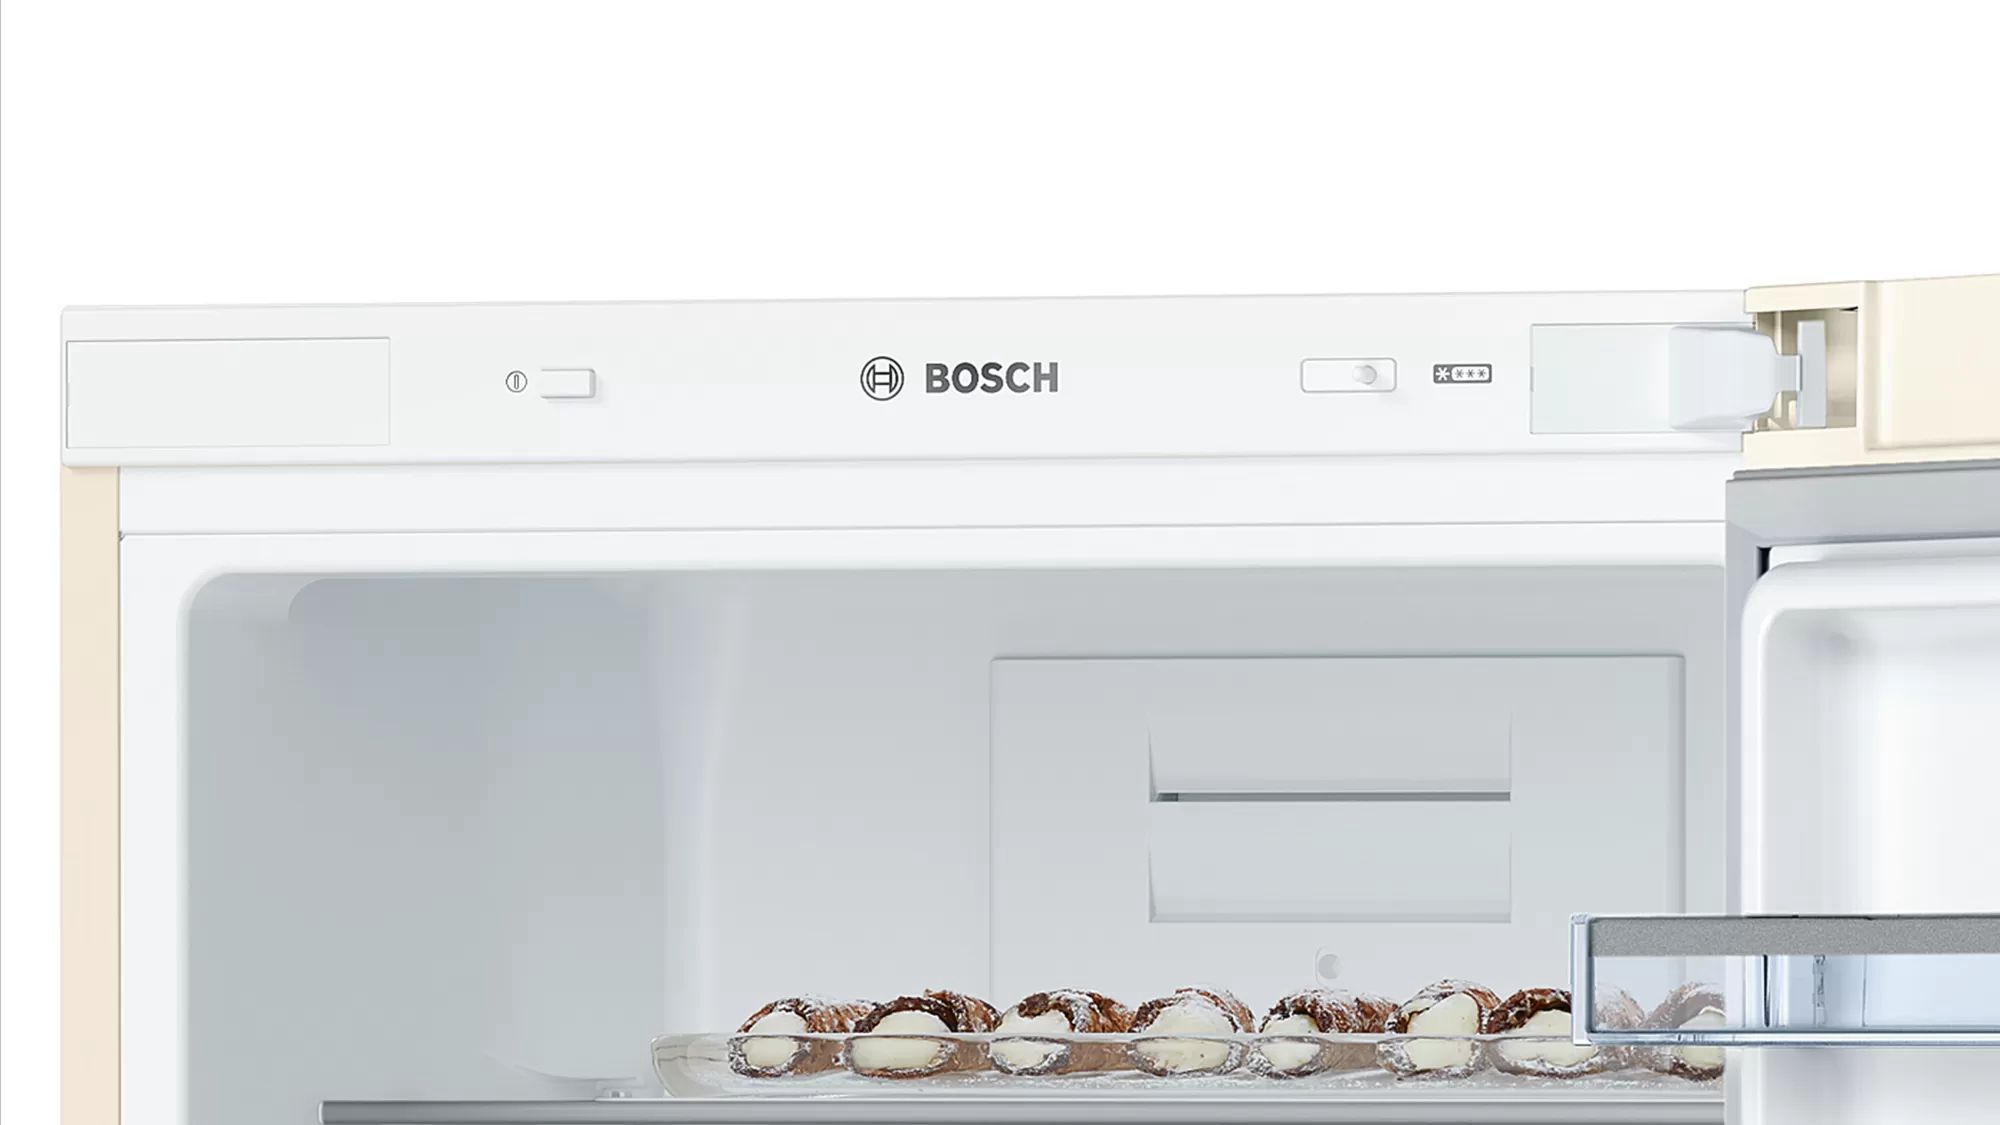 холодильник bosch kgn36хк18, купить в Красноярске холодильник bosch kgn36хк18,  купить в Красноярске дешево холодильник bosch kgn36хк18, купить в Красноярске минимальной цене холодильник bosch kgn36хк18